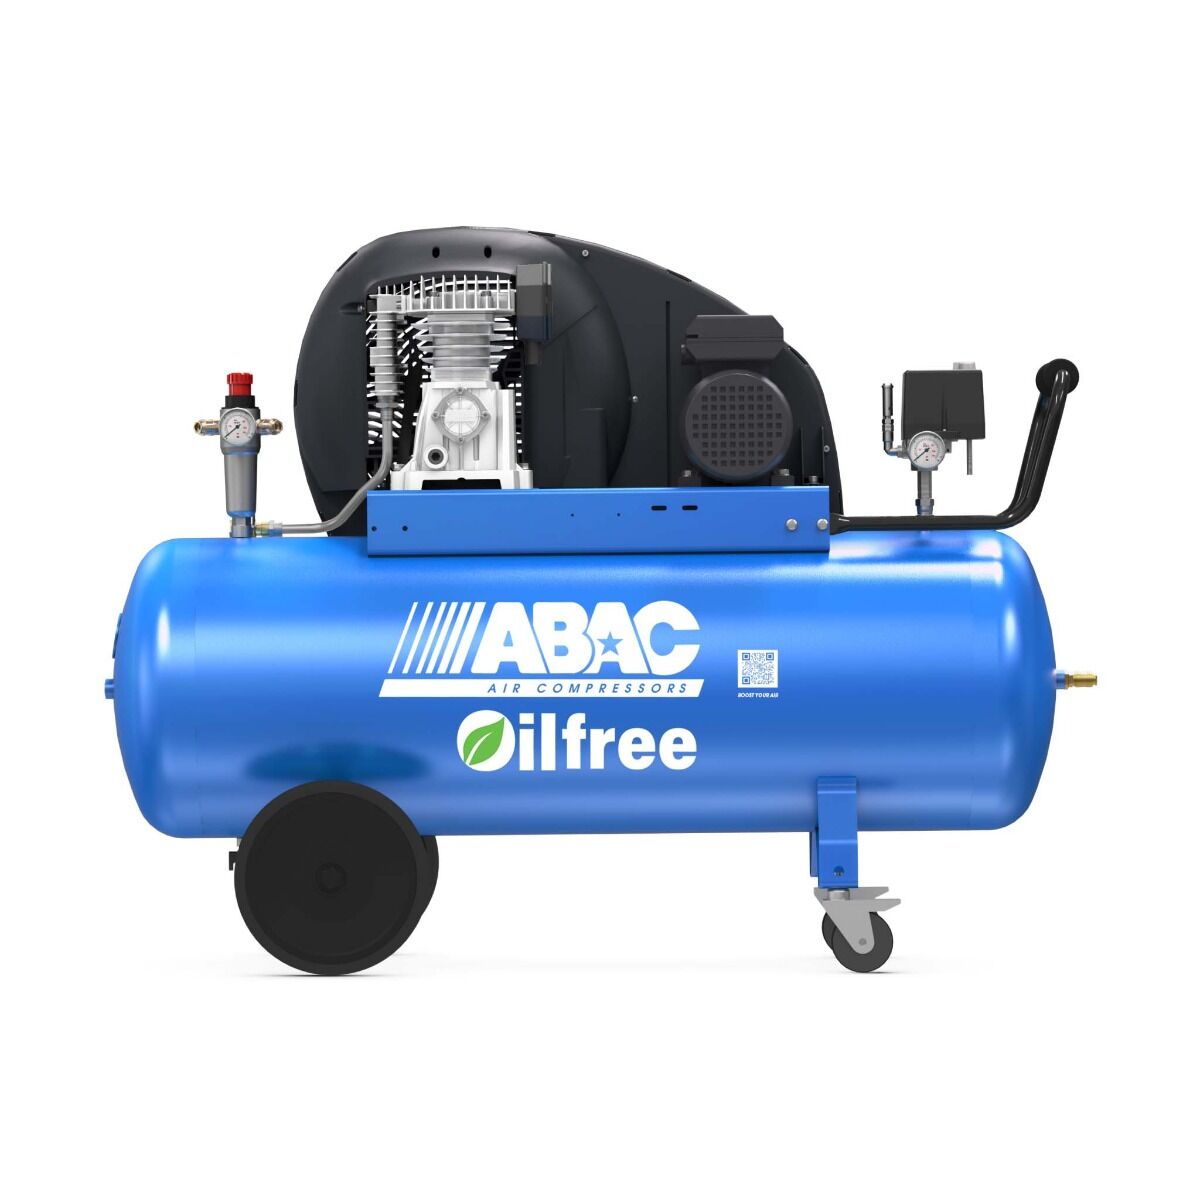 ABAC PRO A29B-0 150 CT3 compressore senza olio 3HP 150L (400V)